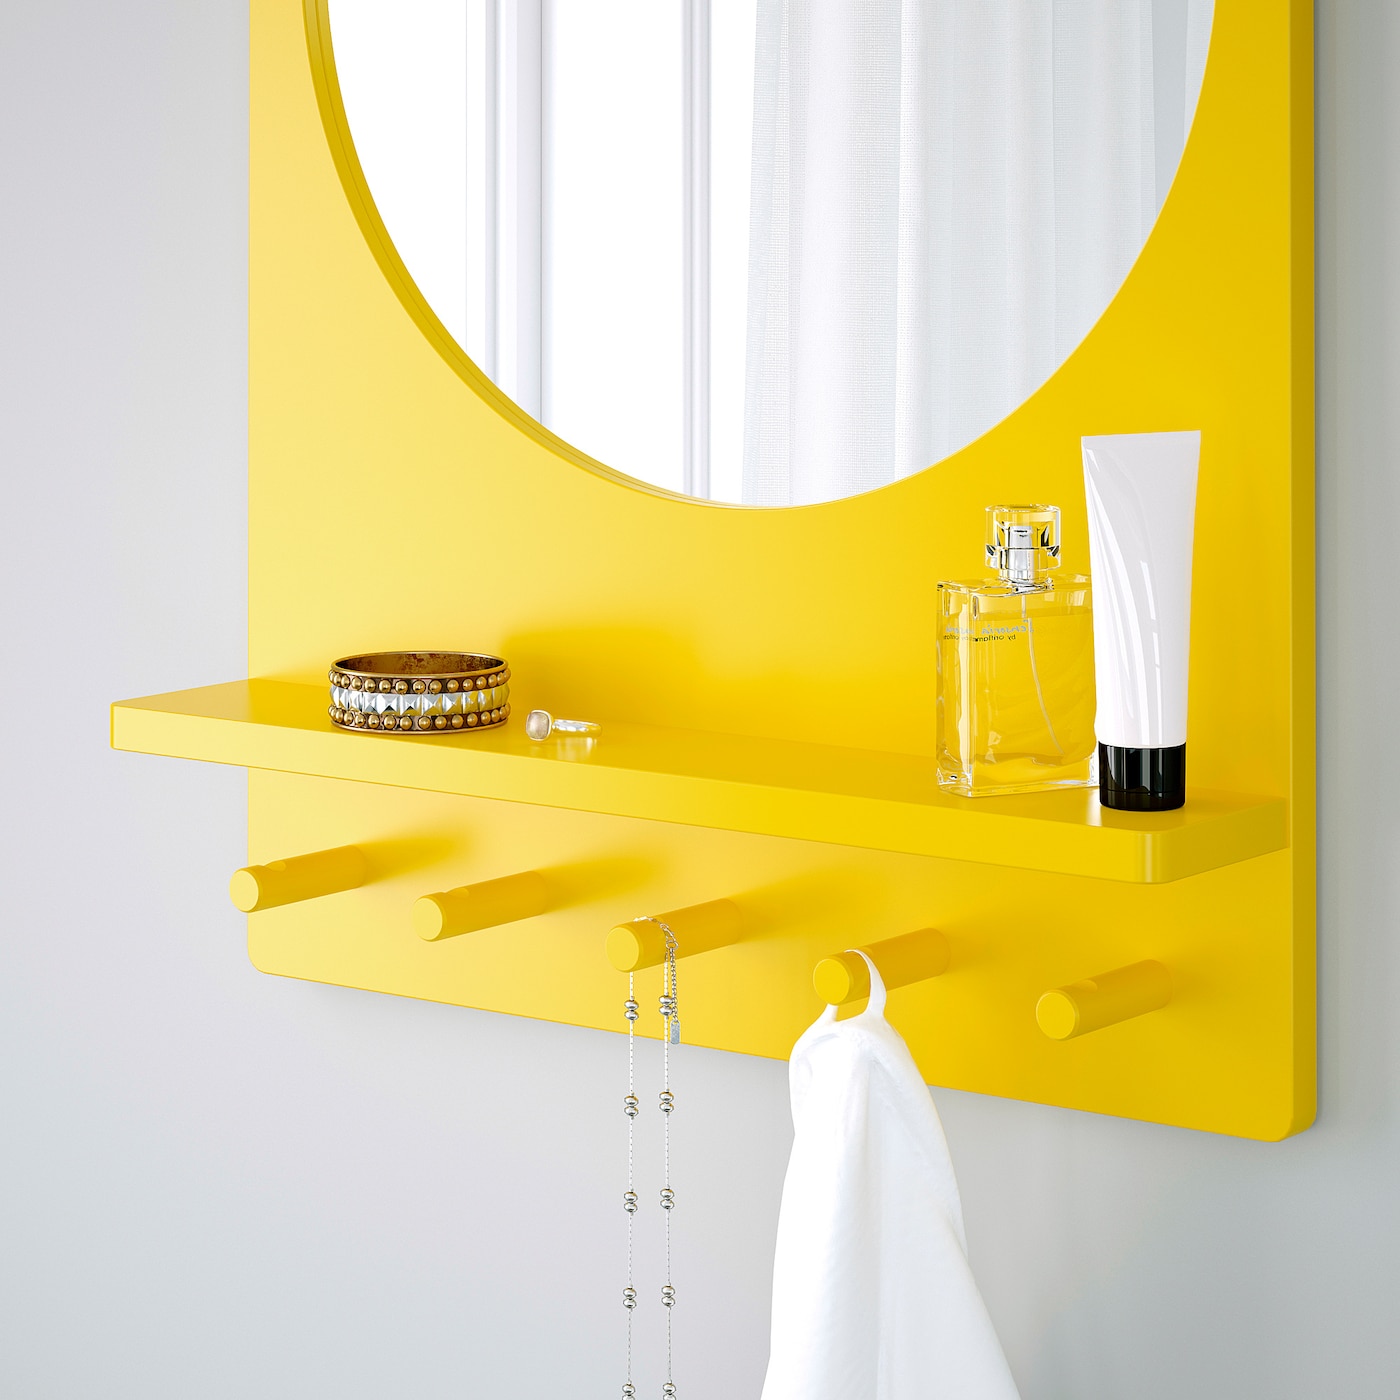 Aesthetic Yellow Mirror Design